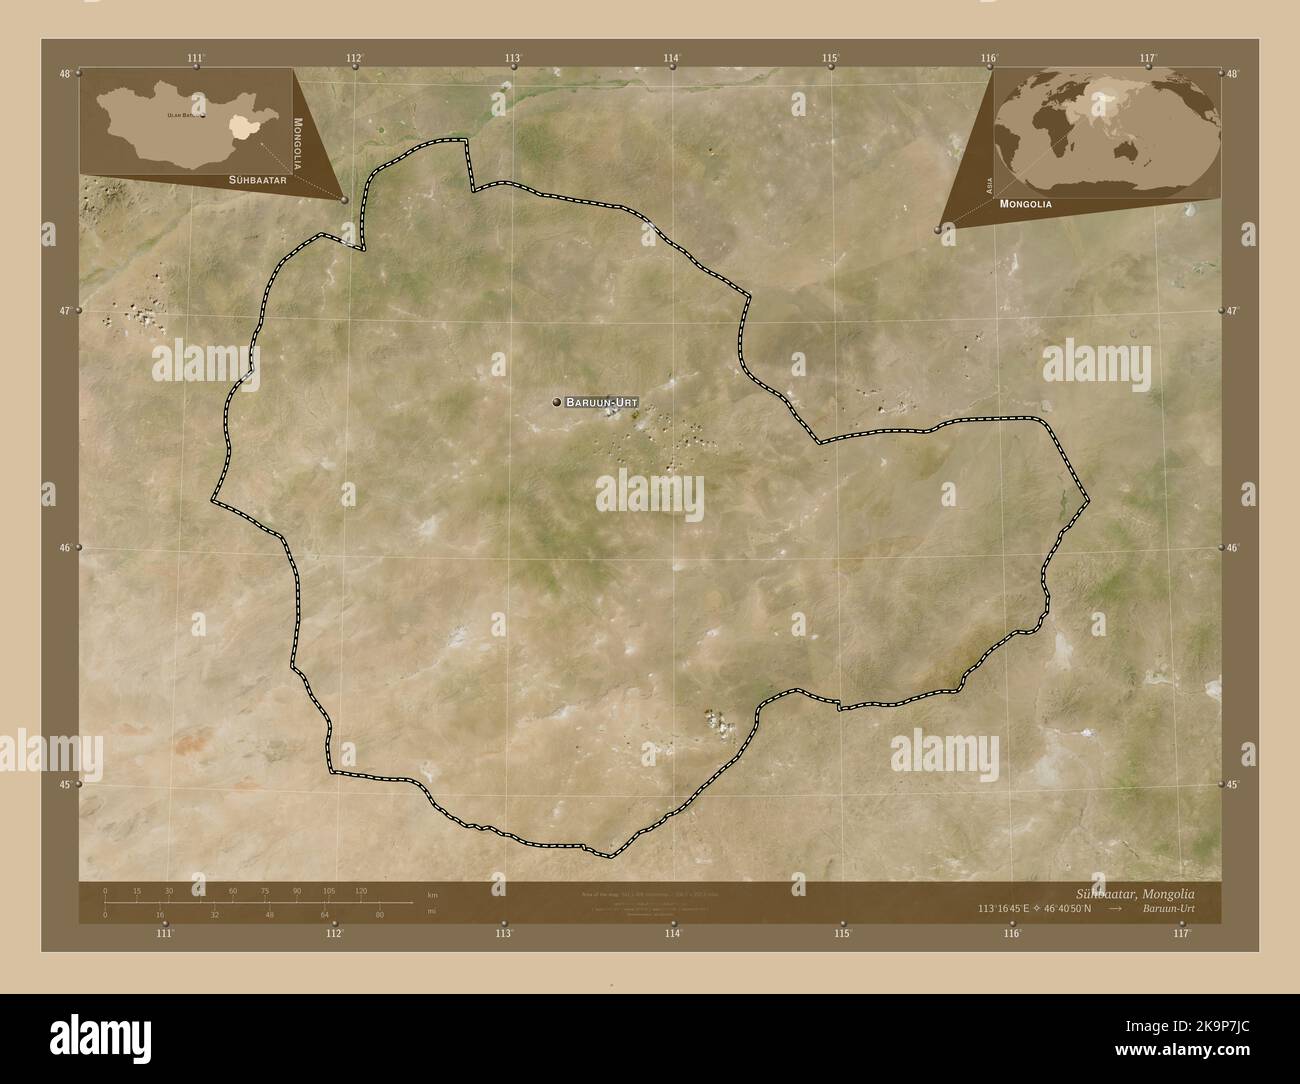 Suhbaatar, province de Mongolie. Carte satellite basse résolution. Lieux et noms des principales villes de la région. Cartes d'emplacement auxiliaire d'angle Banque D'Images